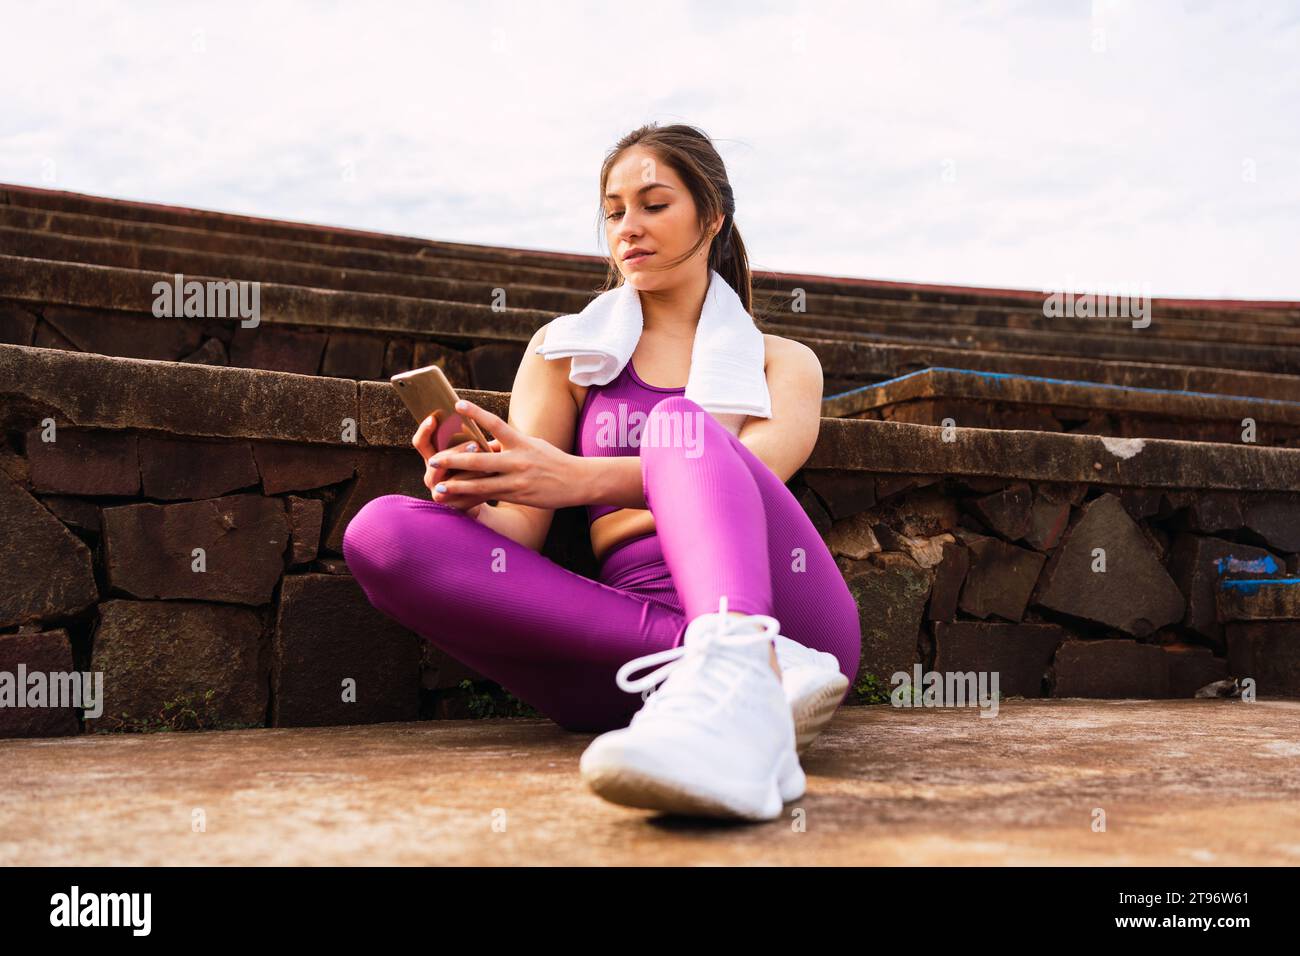 Niedriger Winkel voller Körper einer jungen weiblichen Athletin in lila Sportswear, die auf der Fußbodengrenze durch Steintreppen sitzt und an sonnigen Tagen mit Ihrem Handy herumfummelt Stockfoto